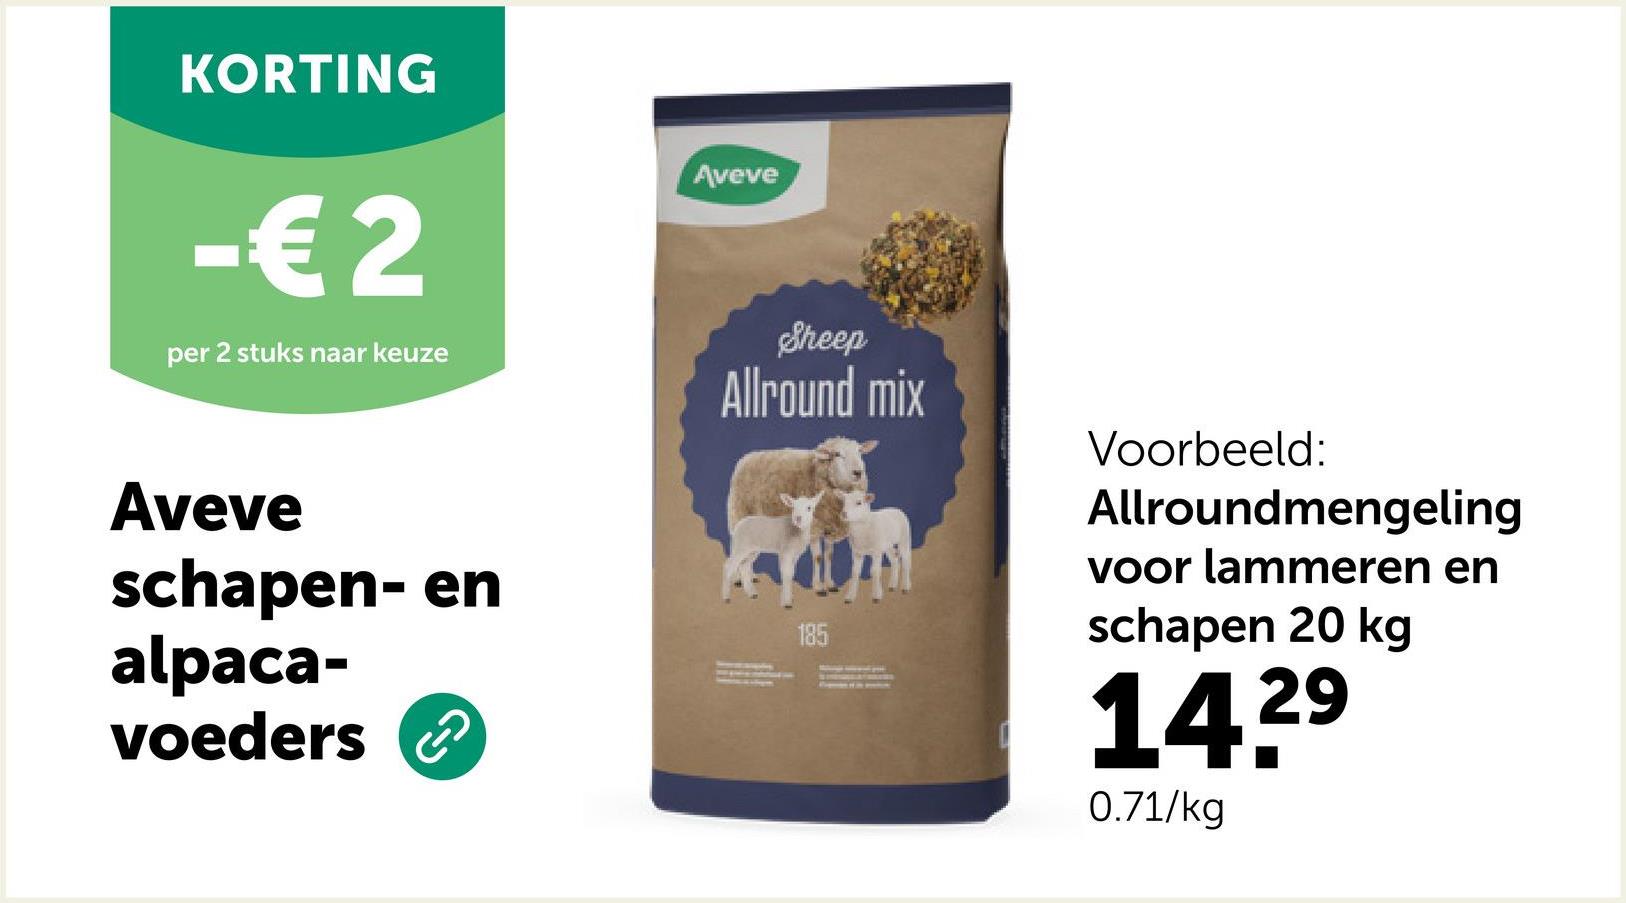 KORTING
-€ 2
per 2 stuks naar keuze
Aveve
schapen- en
alpaca-
voeders
2
Aveve
Sheep
Allround mix
185
Voorbeeld:
Allroundmengeling
voor lammeren en
schapen 20 kg
14.2⁹
29
0.71/kg